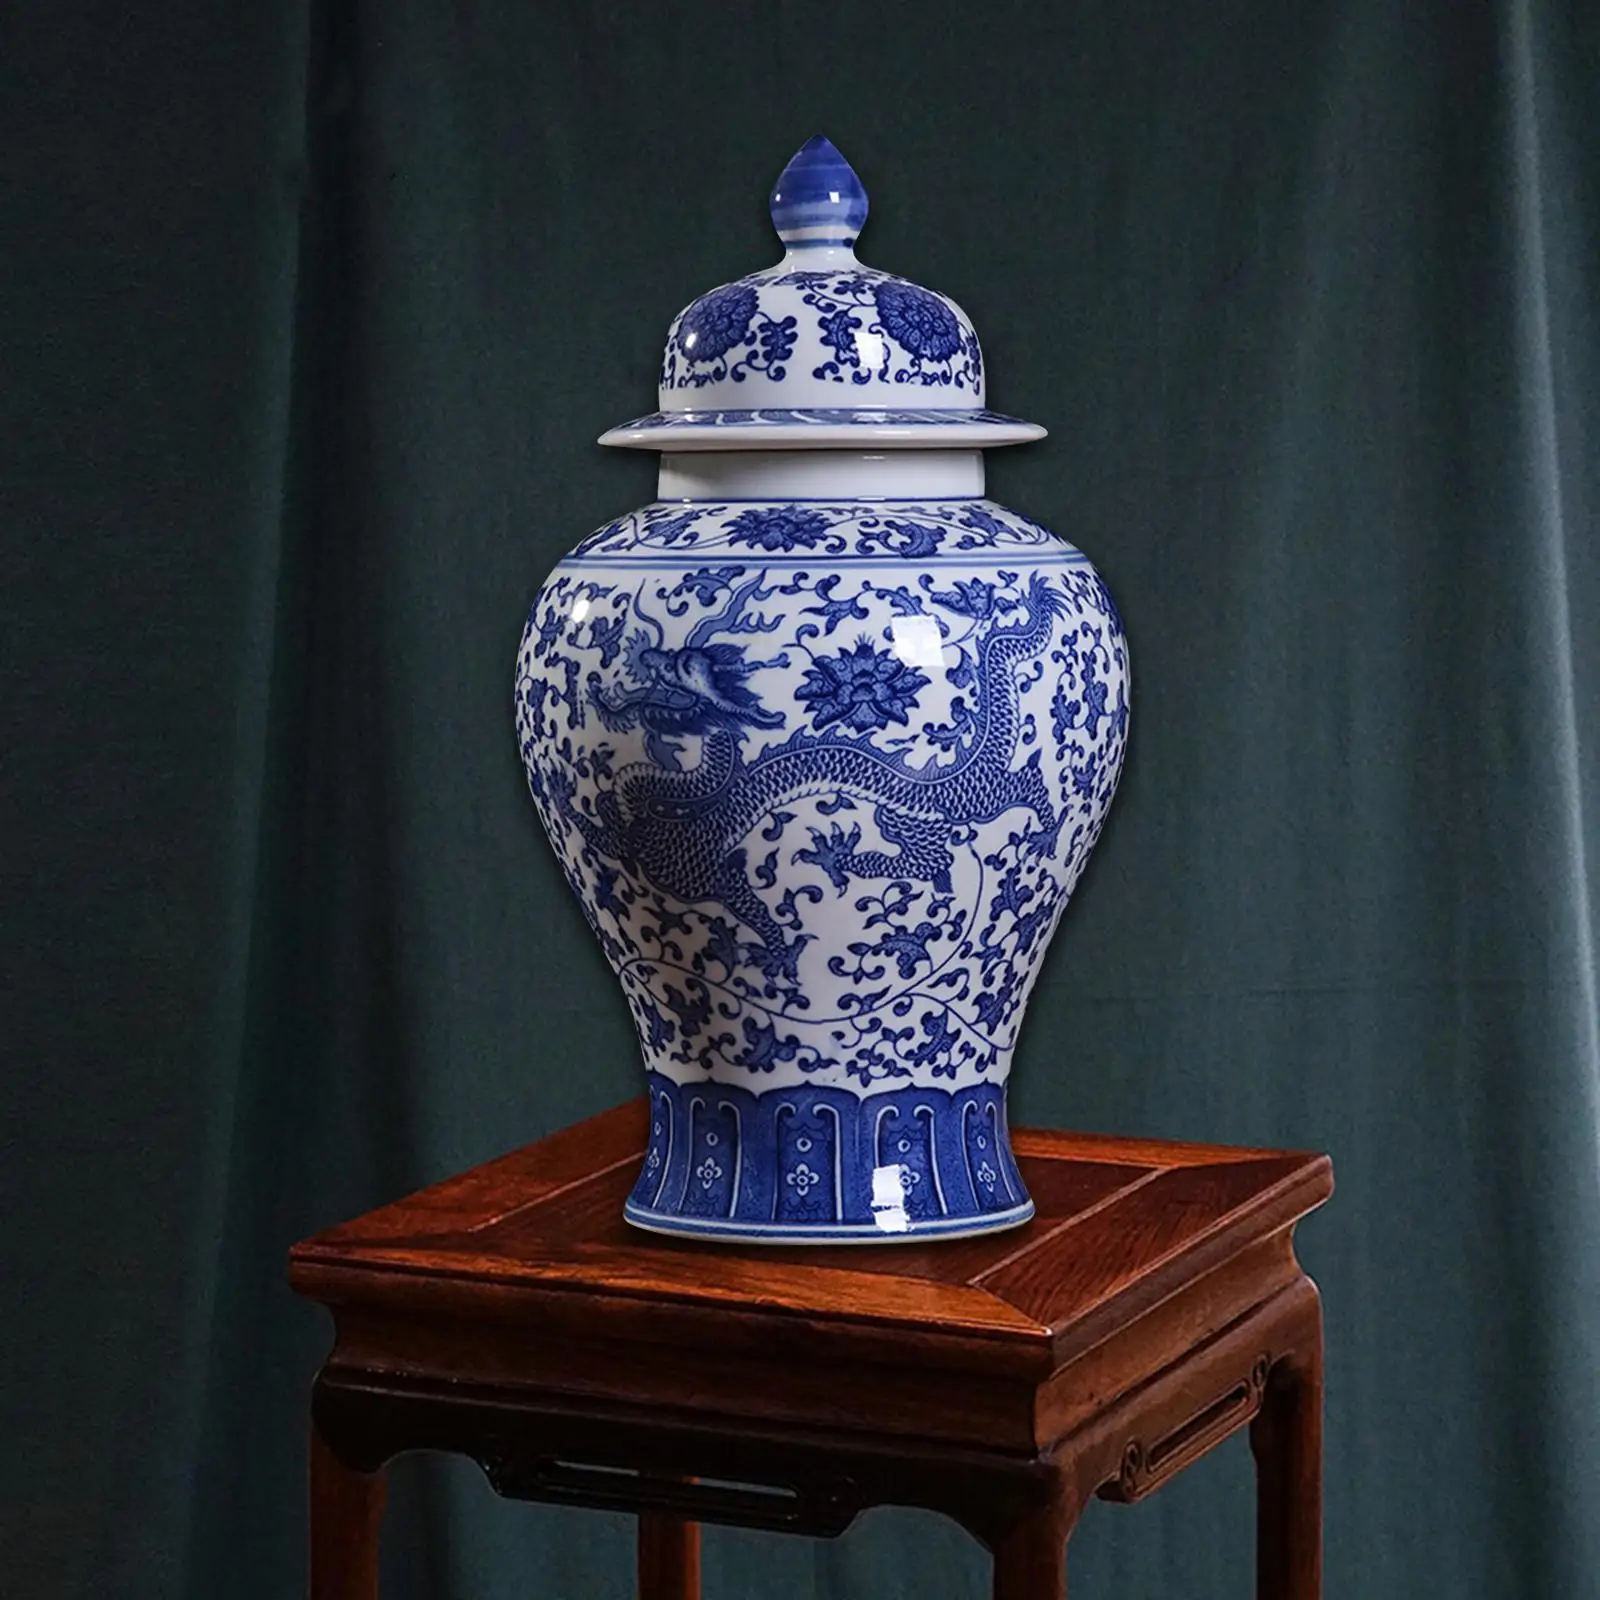 Porcelain Ginger Jar Temple Jar Storage Floral Arrangement Ceramic Flower Vase for Desk